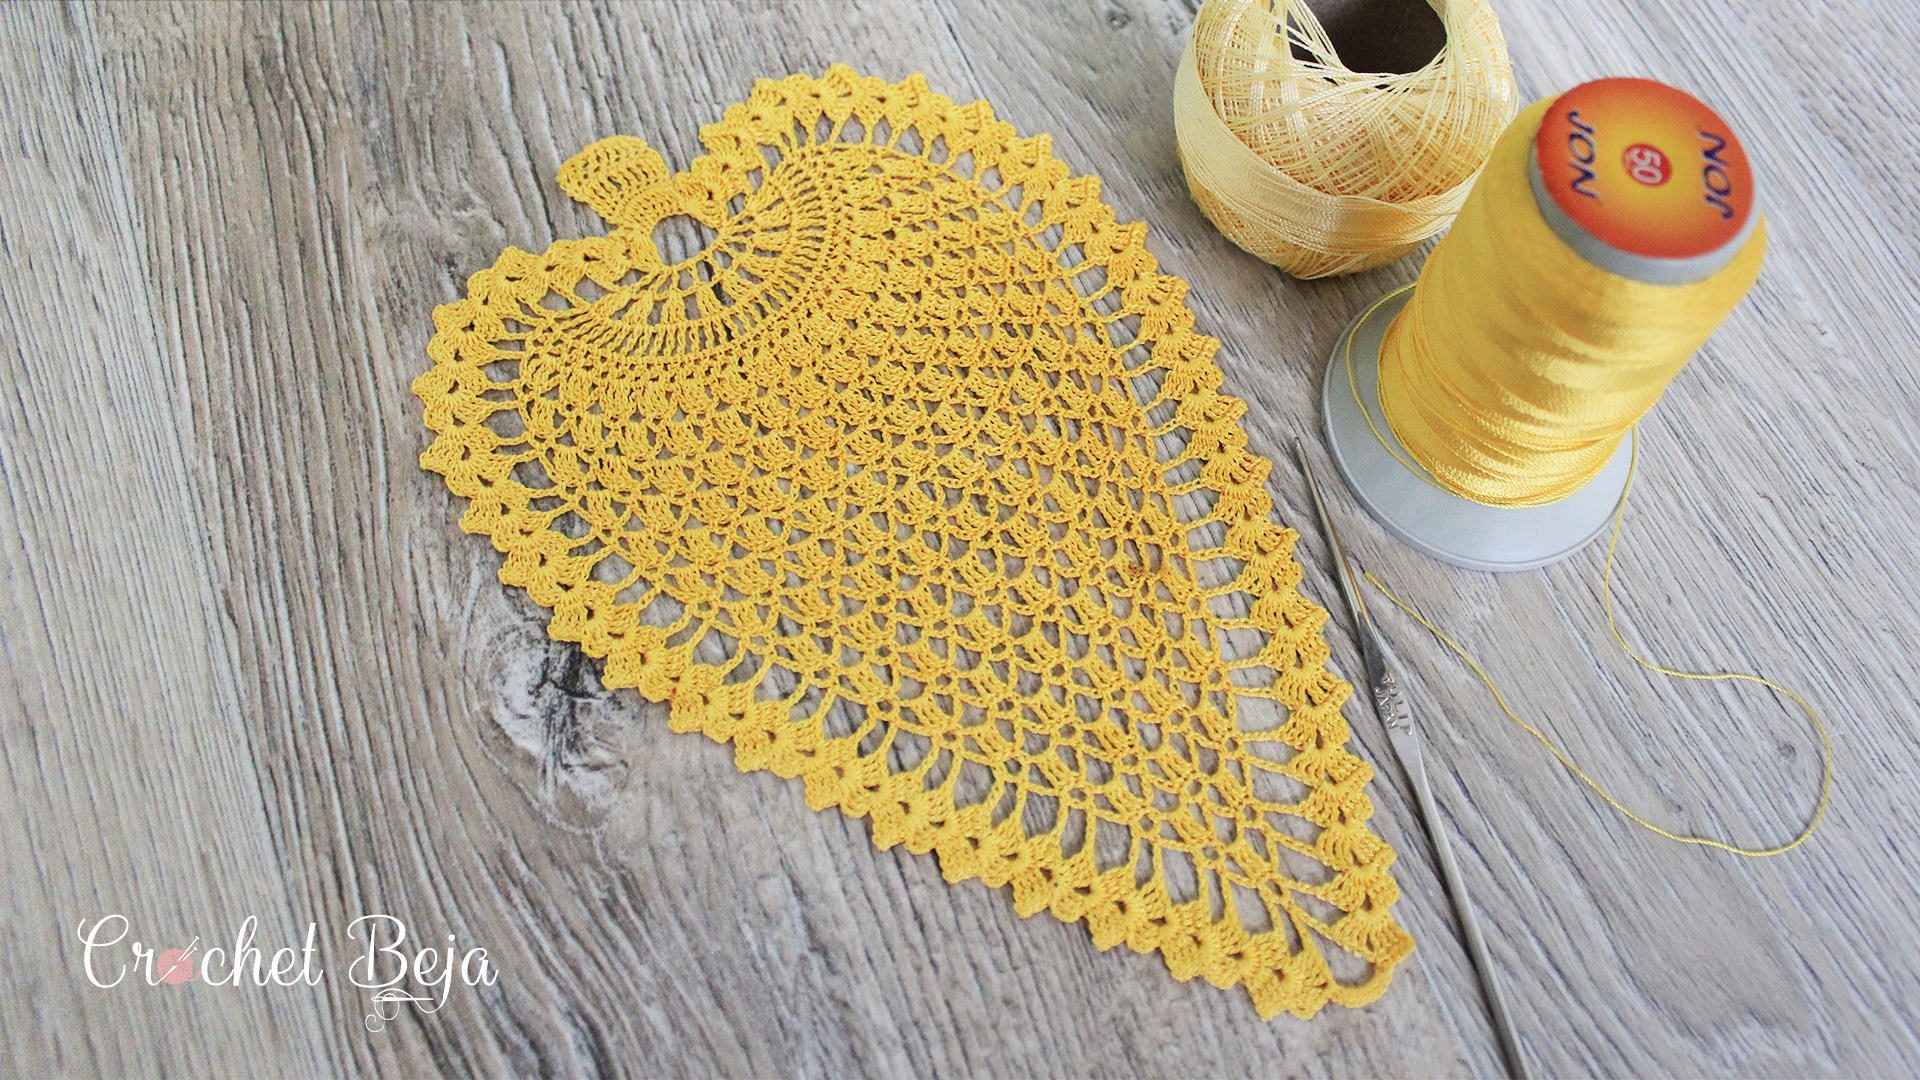 Crochet Pineapple Pattern Anywane Can Learn CrochetBeja